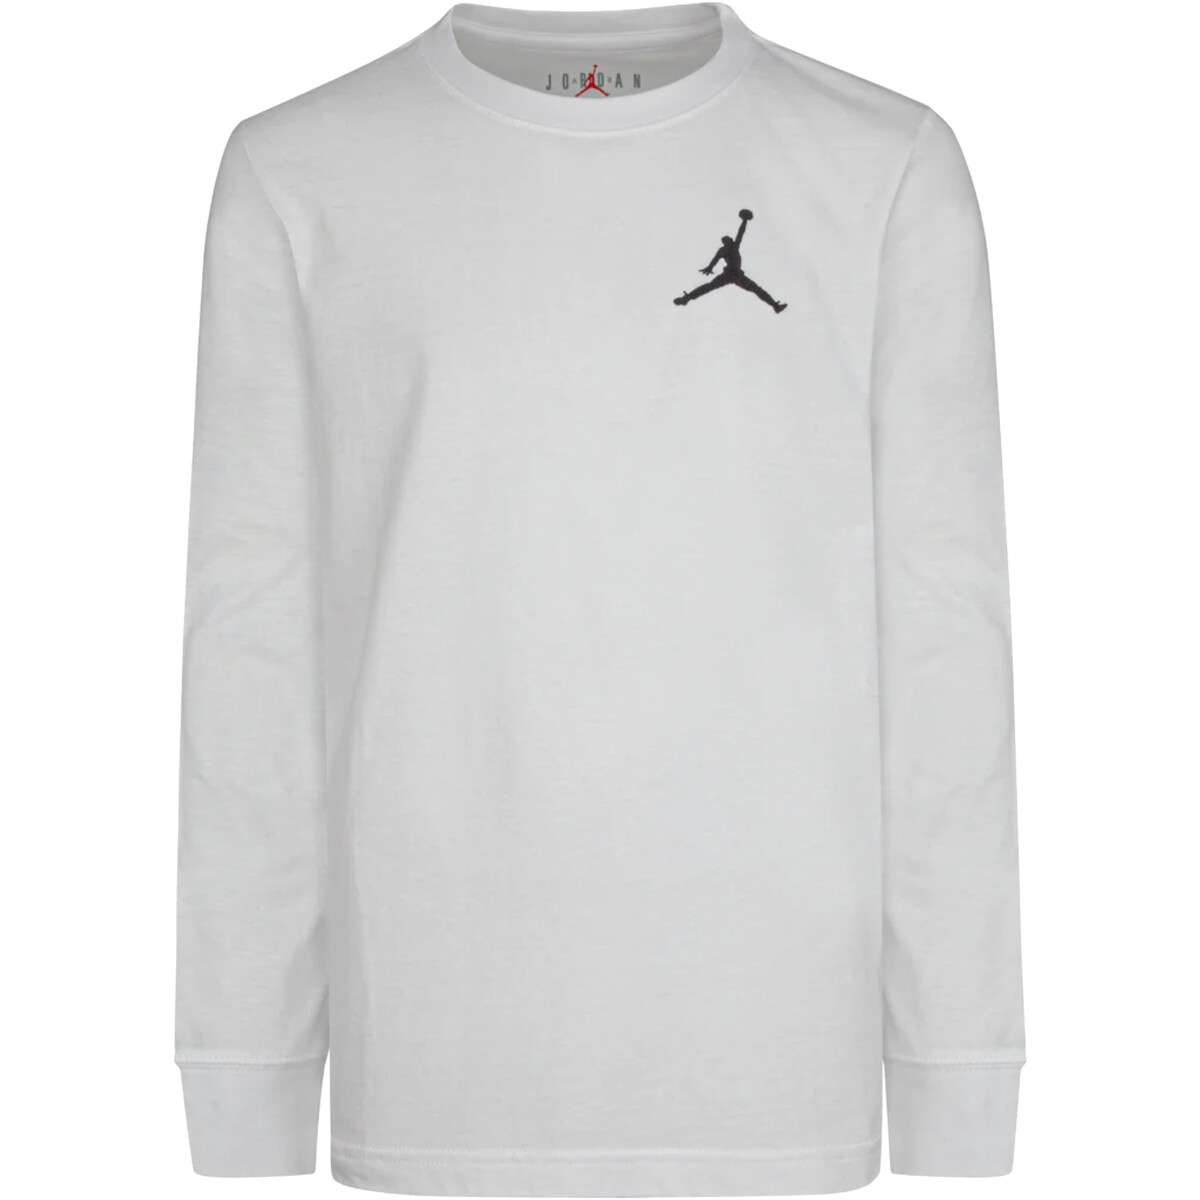 Vêtements Garçon T-shirts manches longues Nike 95A903 Blanc